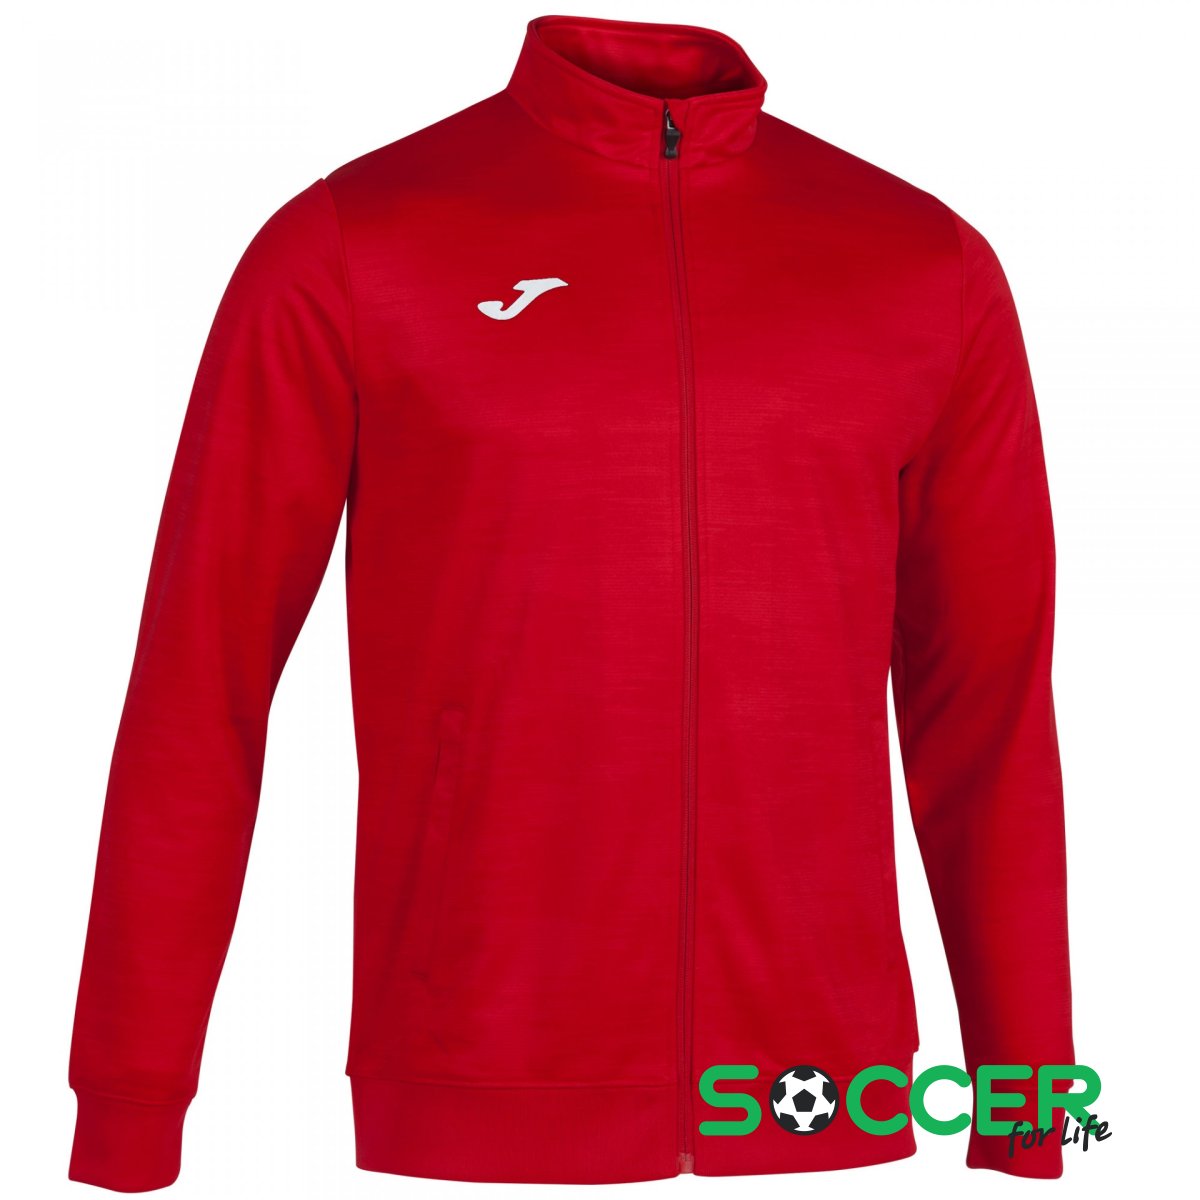 Что такое мастерка. Олимпийка Джома красная. Куртка Joma олимпийка. Олимпийка мужская Joma. Joma кофта красная.